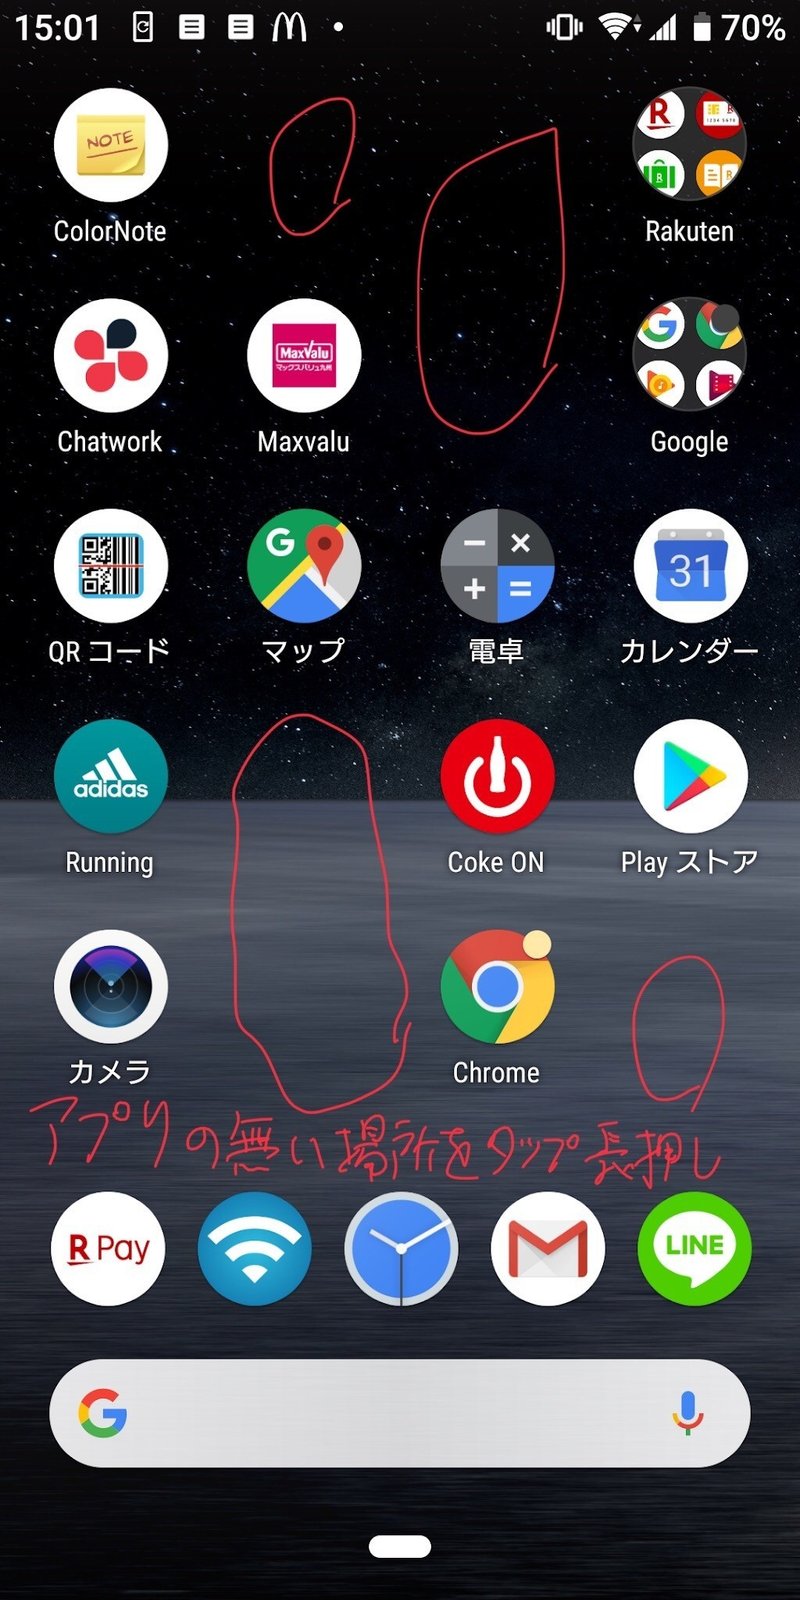 Google Discoverの表示を消す方法 Hide Toyo Note